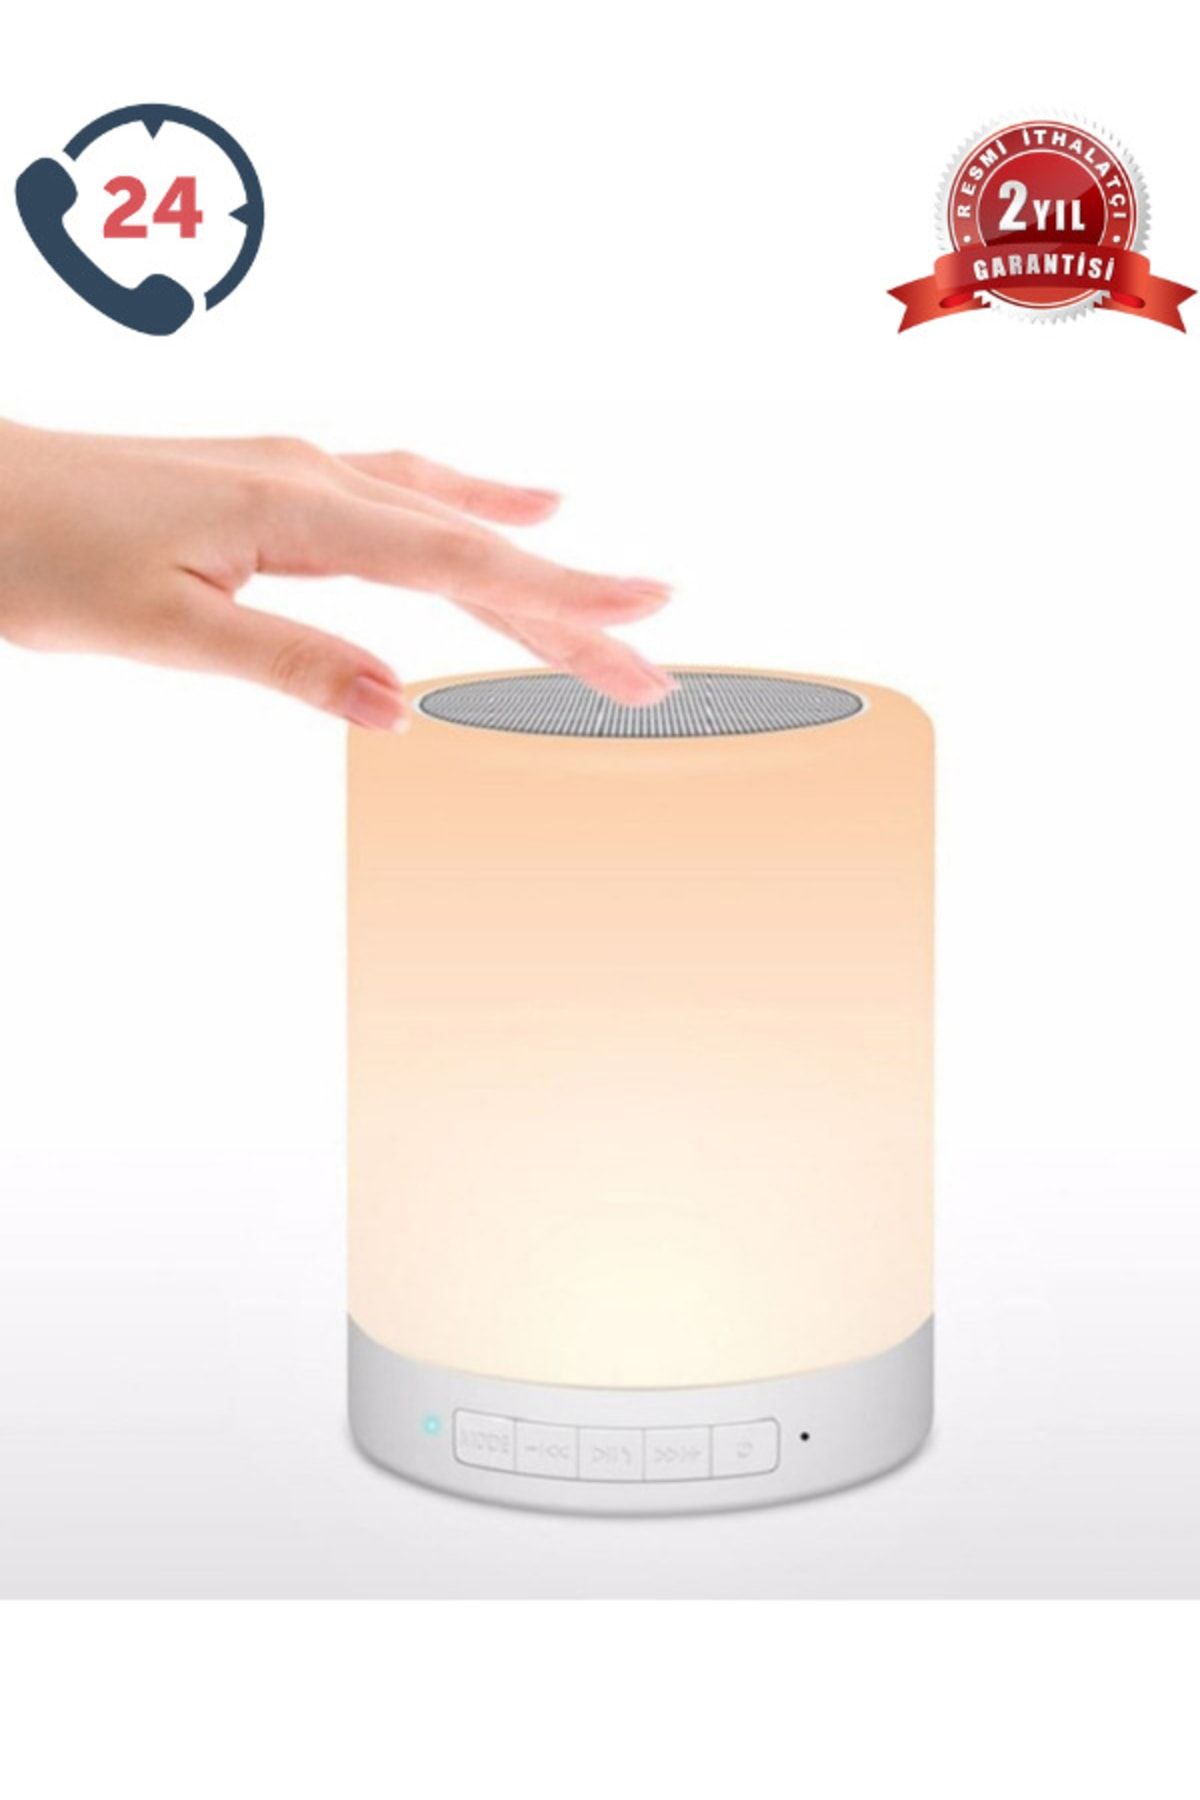 Nanopro Hoparlör Gece Lambası Bluetooth Speaker Beyaz Ithalatçı Garantili